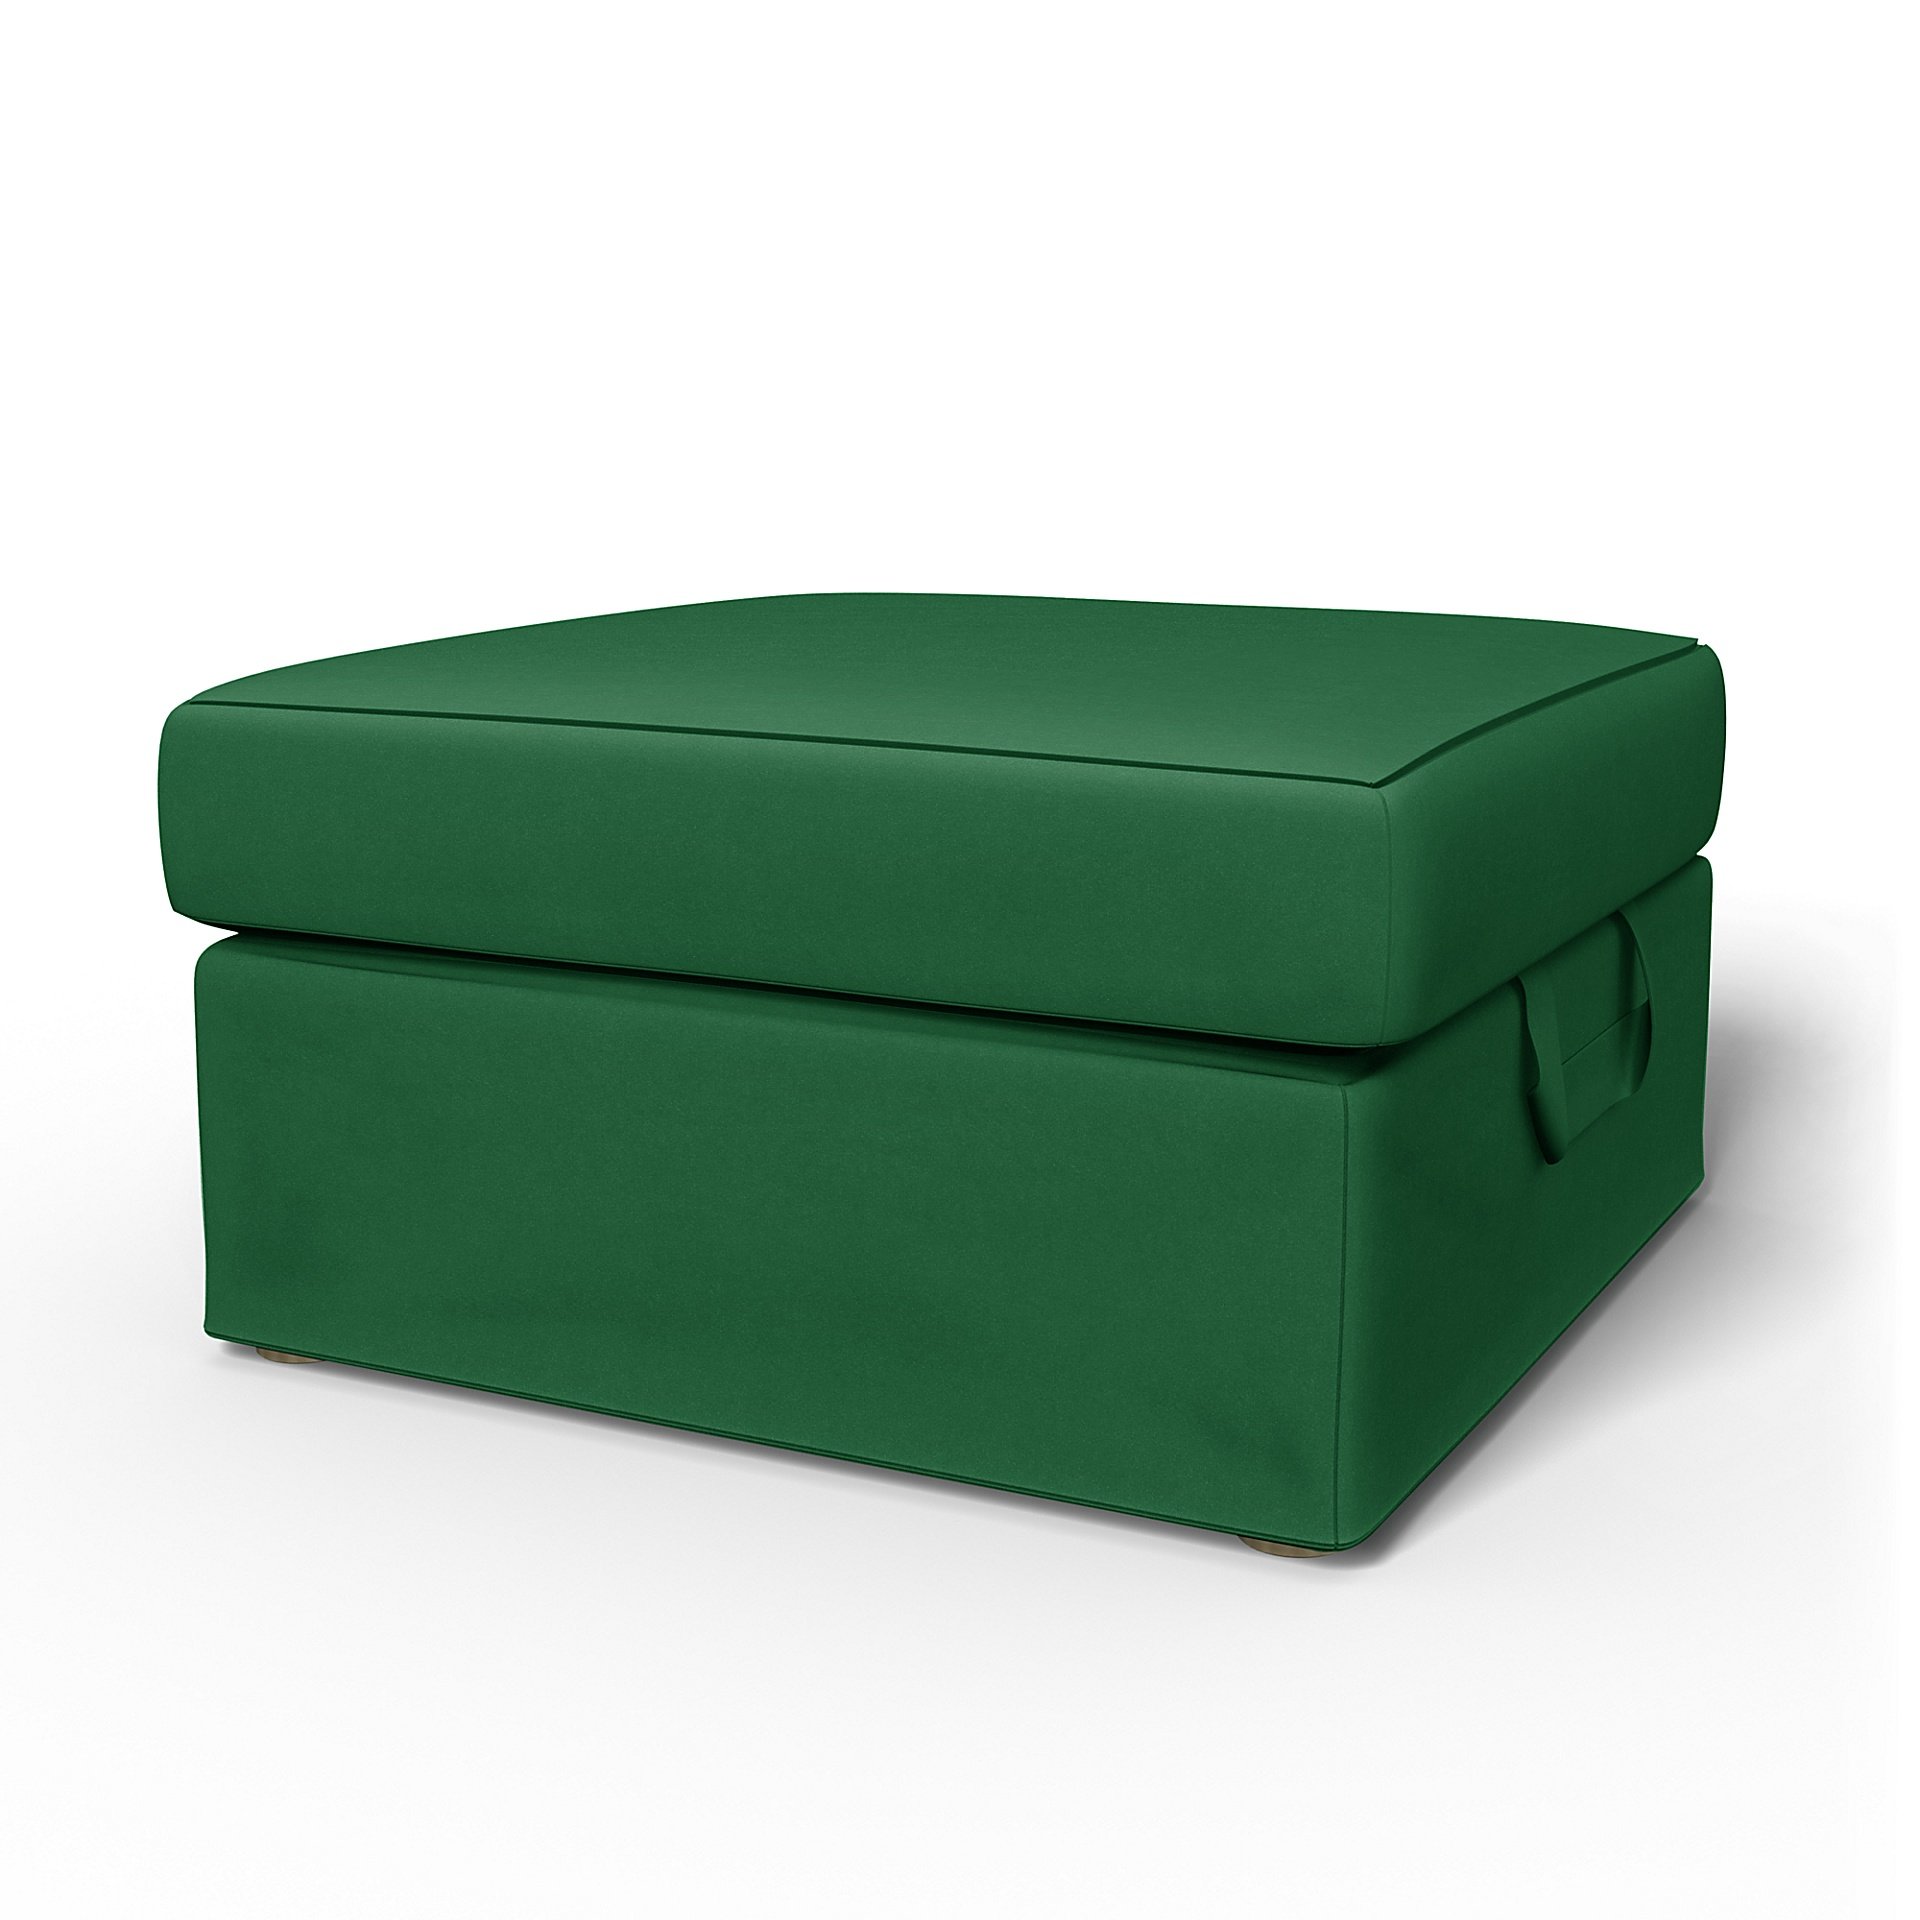 IKEA - Tomelilla Foto Footstool Cover, Abundant Green, Velvet - Bemz